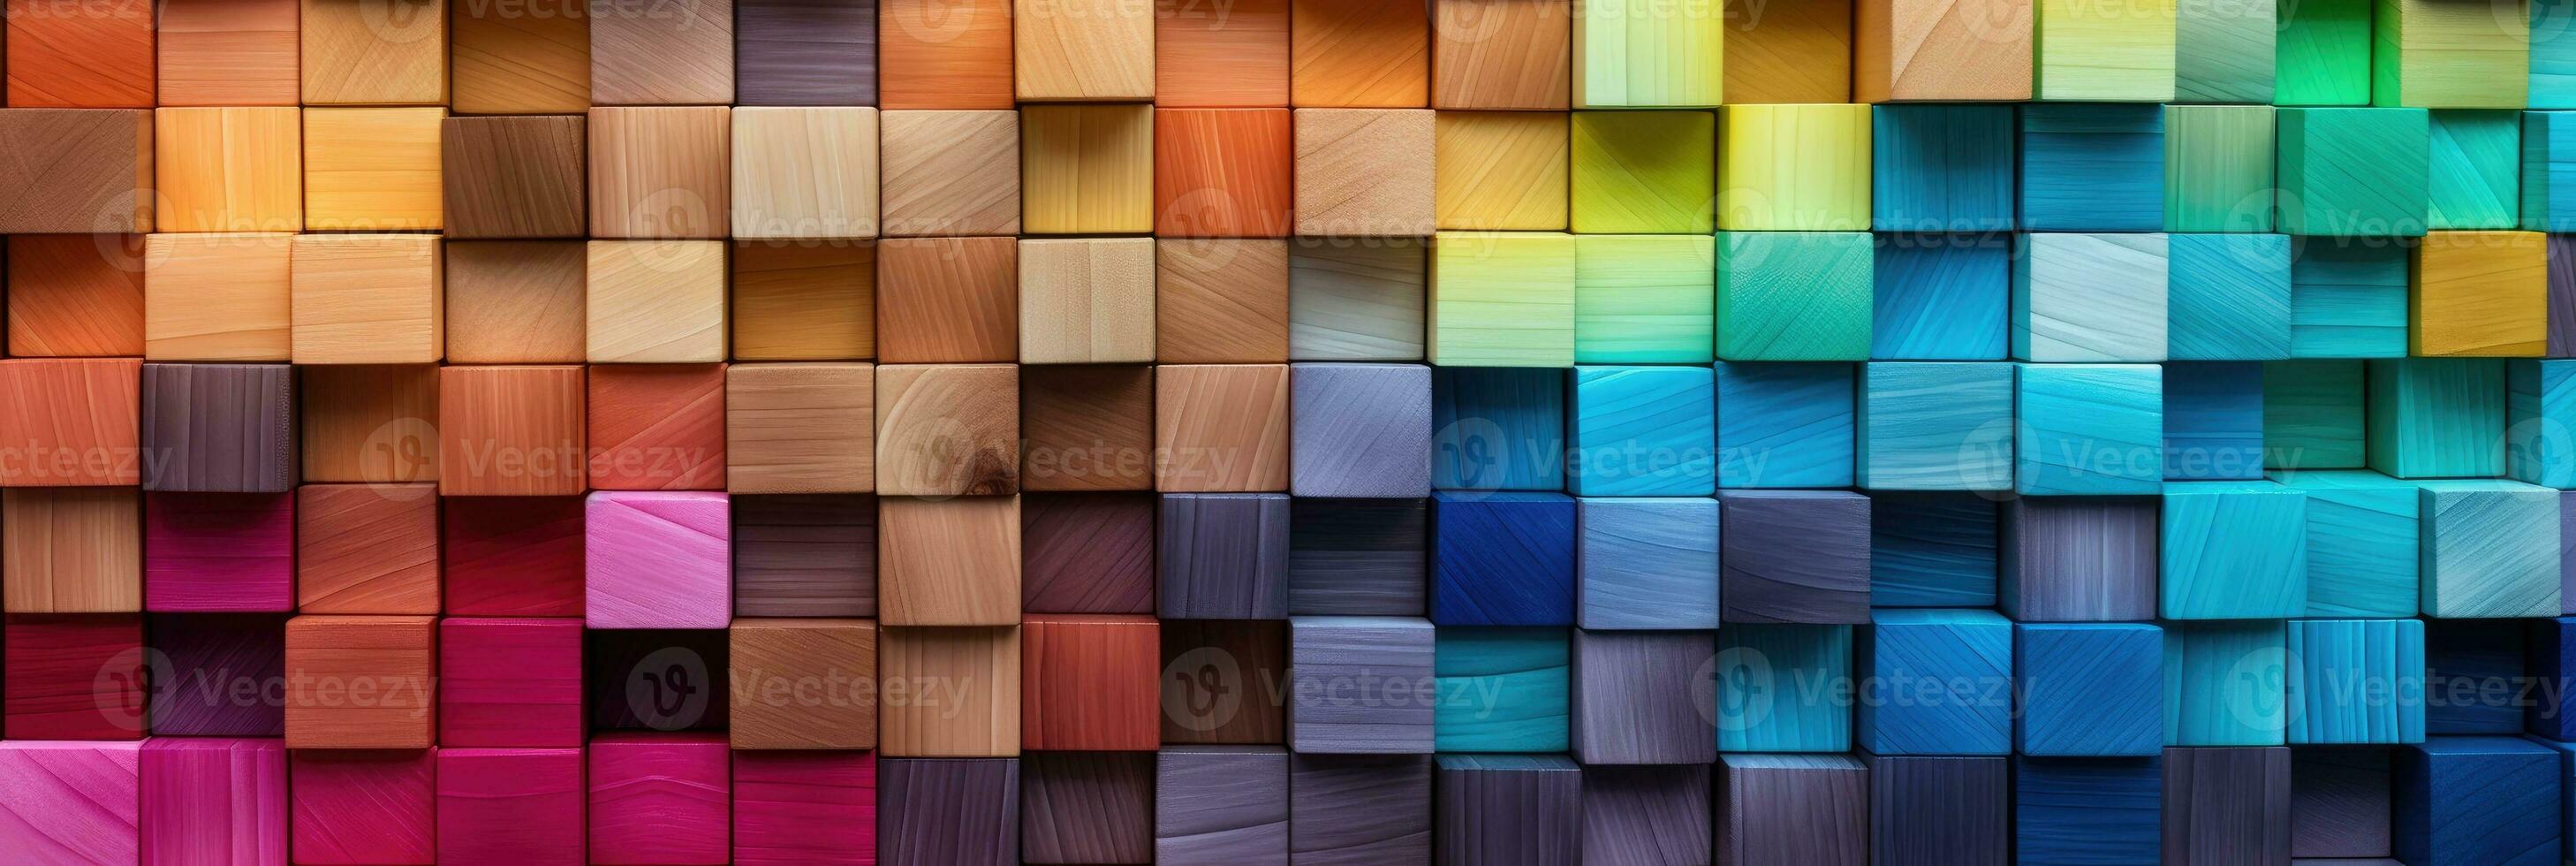 abstrakt blockera stack trä- 3d kuber, färgrik trä textur för bakgrund foto